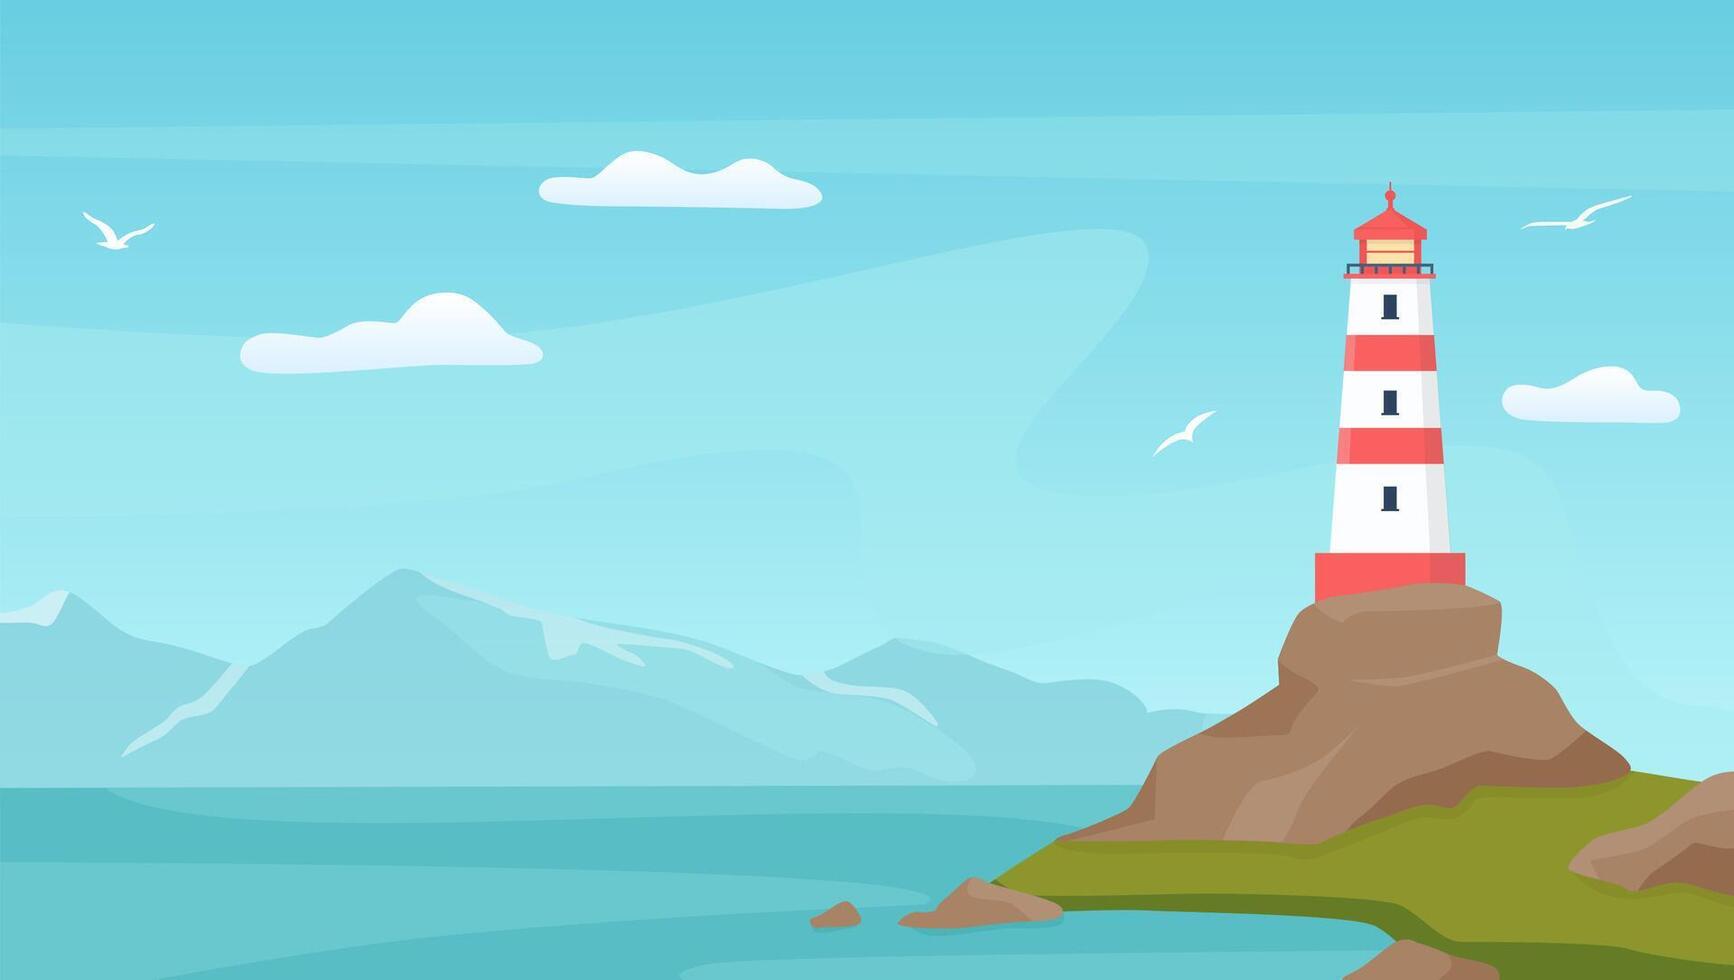 mer paysage avec balise. phare la tour sur côte avec rock. dessin animé bleu ciel avec mouettes, rive, océan vagues et Montagne vecteur scène